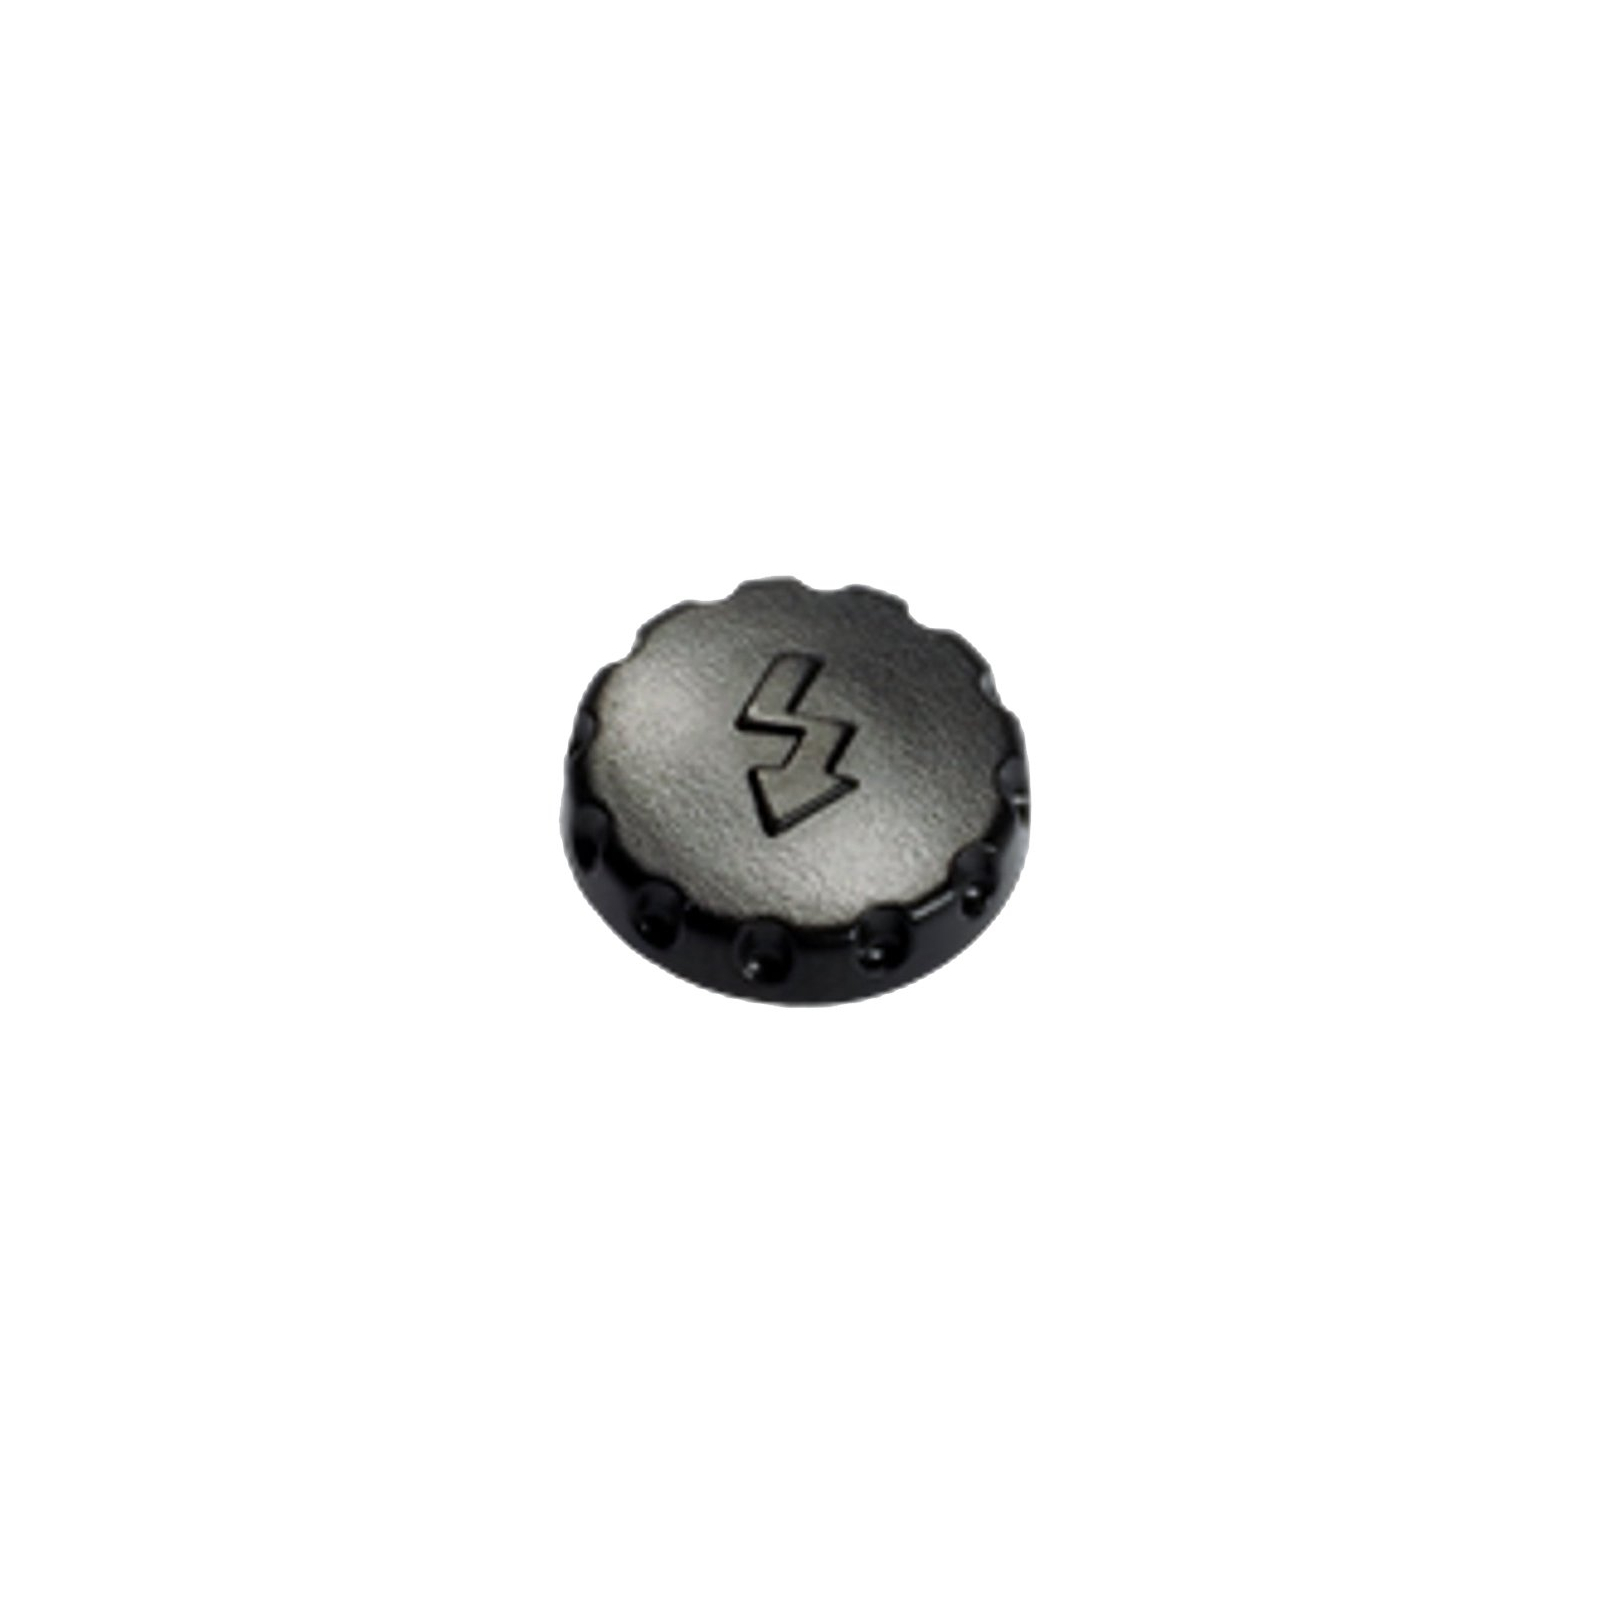 Крышка объектива Olympus Synchro Jack Cover Cap for E-M1 / E-M5 / E-M5 mark II (VE254700)